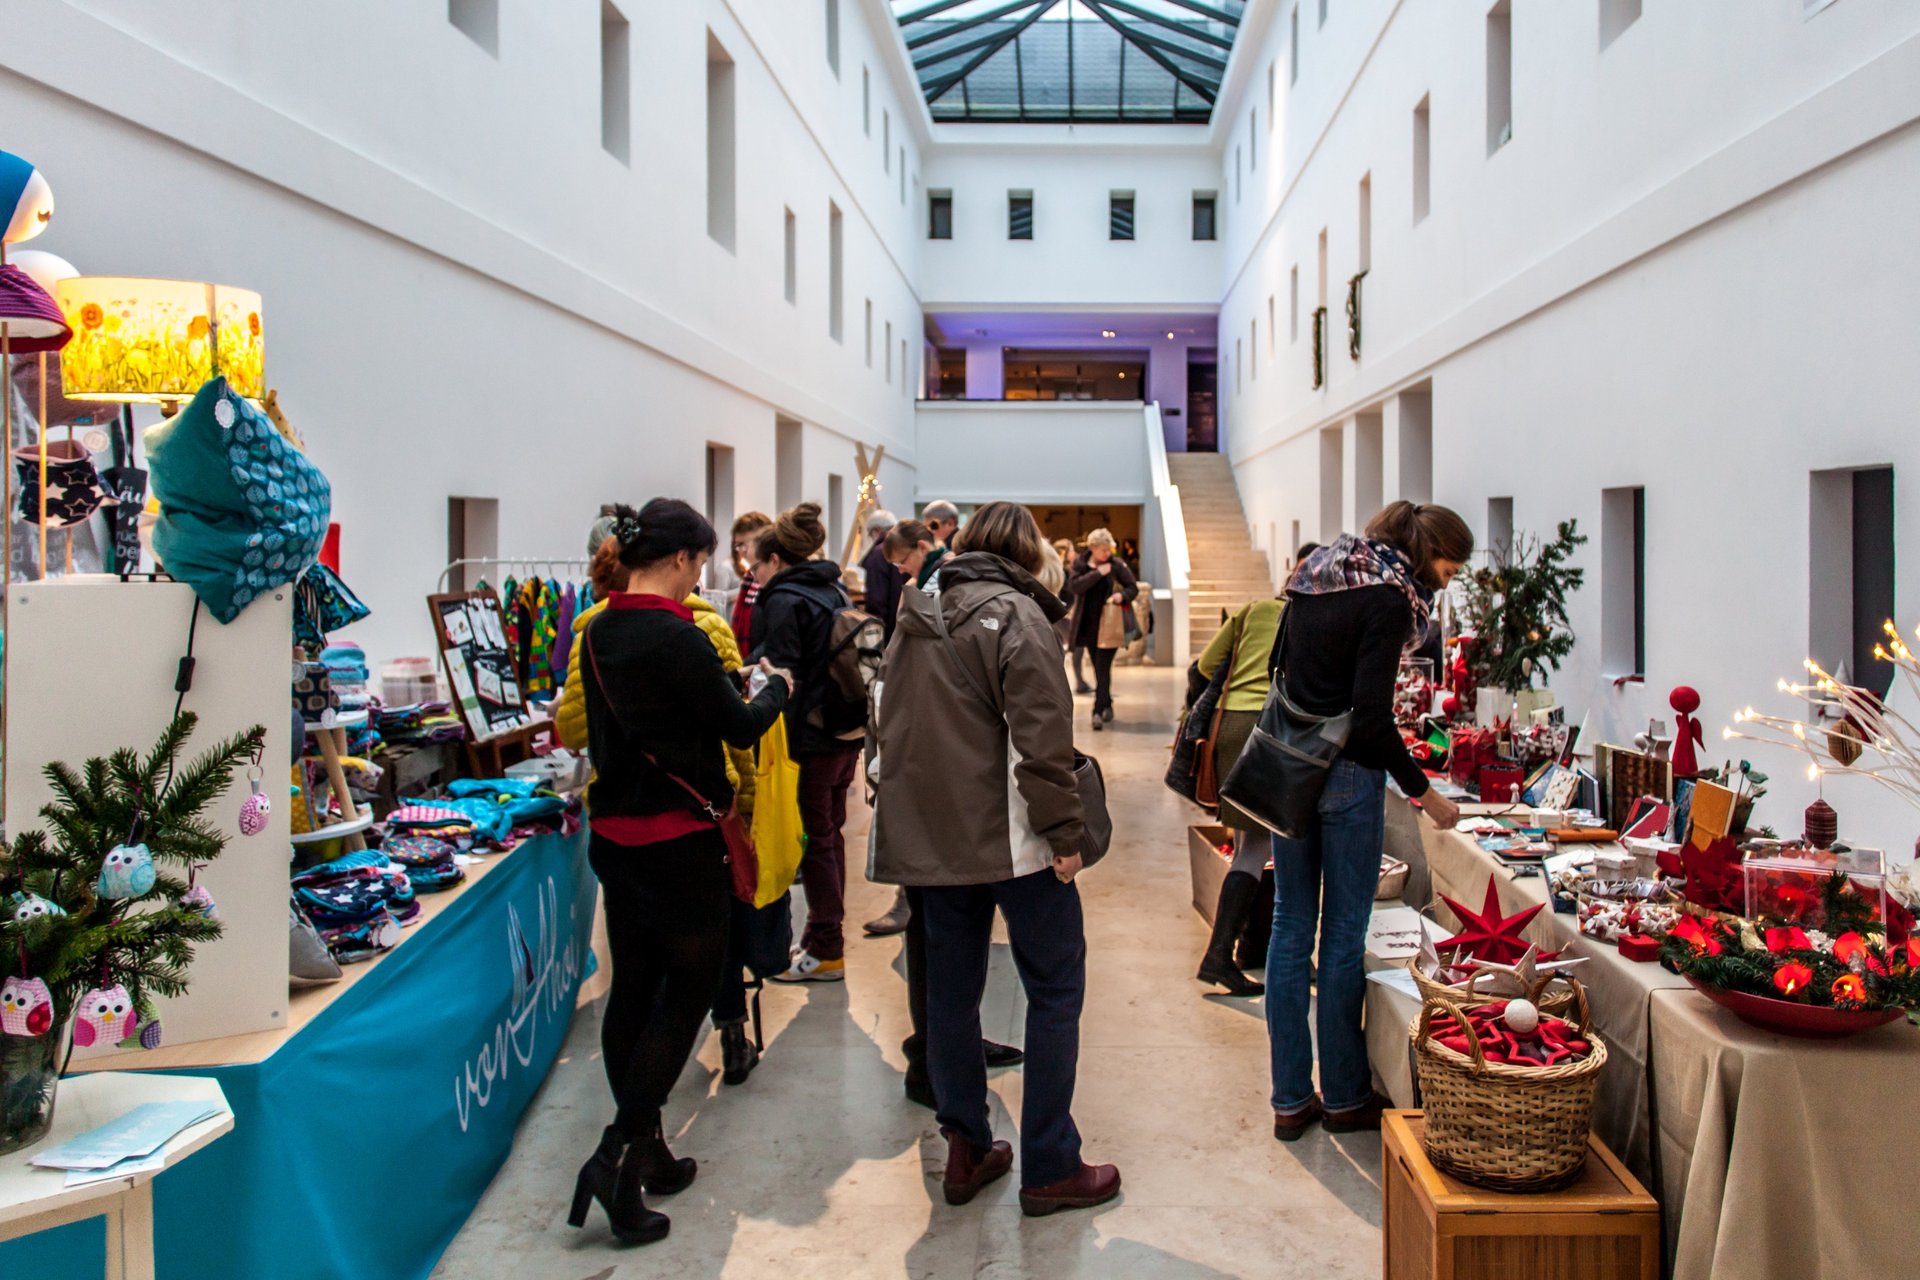 Kunsthandwerkermarkt: Blick in den Lichthof. Mehrere Stände mit weihnachtlichen Waren und Kunsthandwerk, dazwischen Besucherinnen und Besucher. Foto: Henry Dramsch